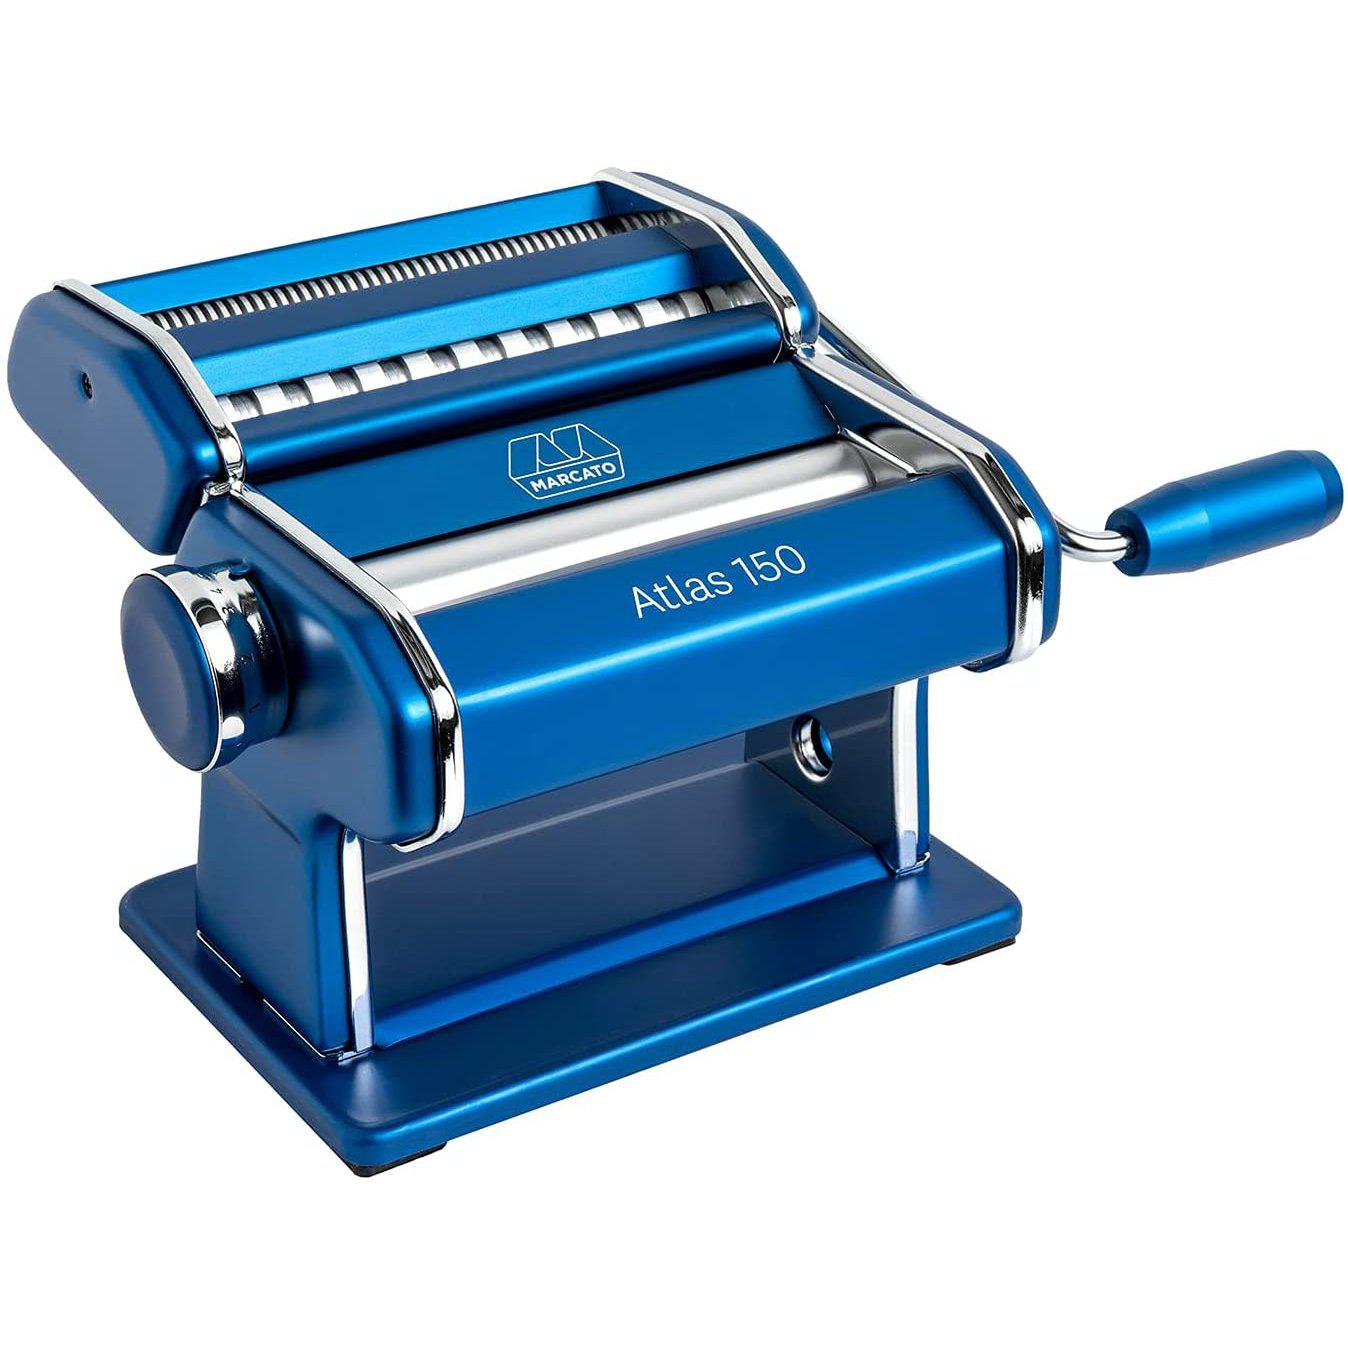 Tegen de wil Tien overzee Marcato Atlas Blue 150mm Wellness Pasta Maker — Consiglio's Kitchenware